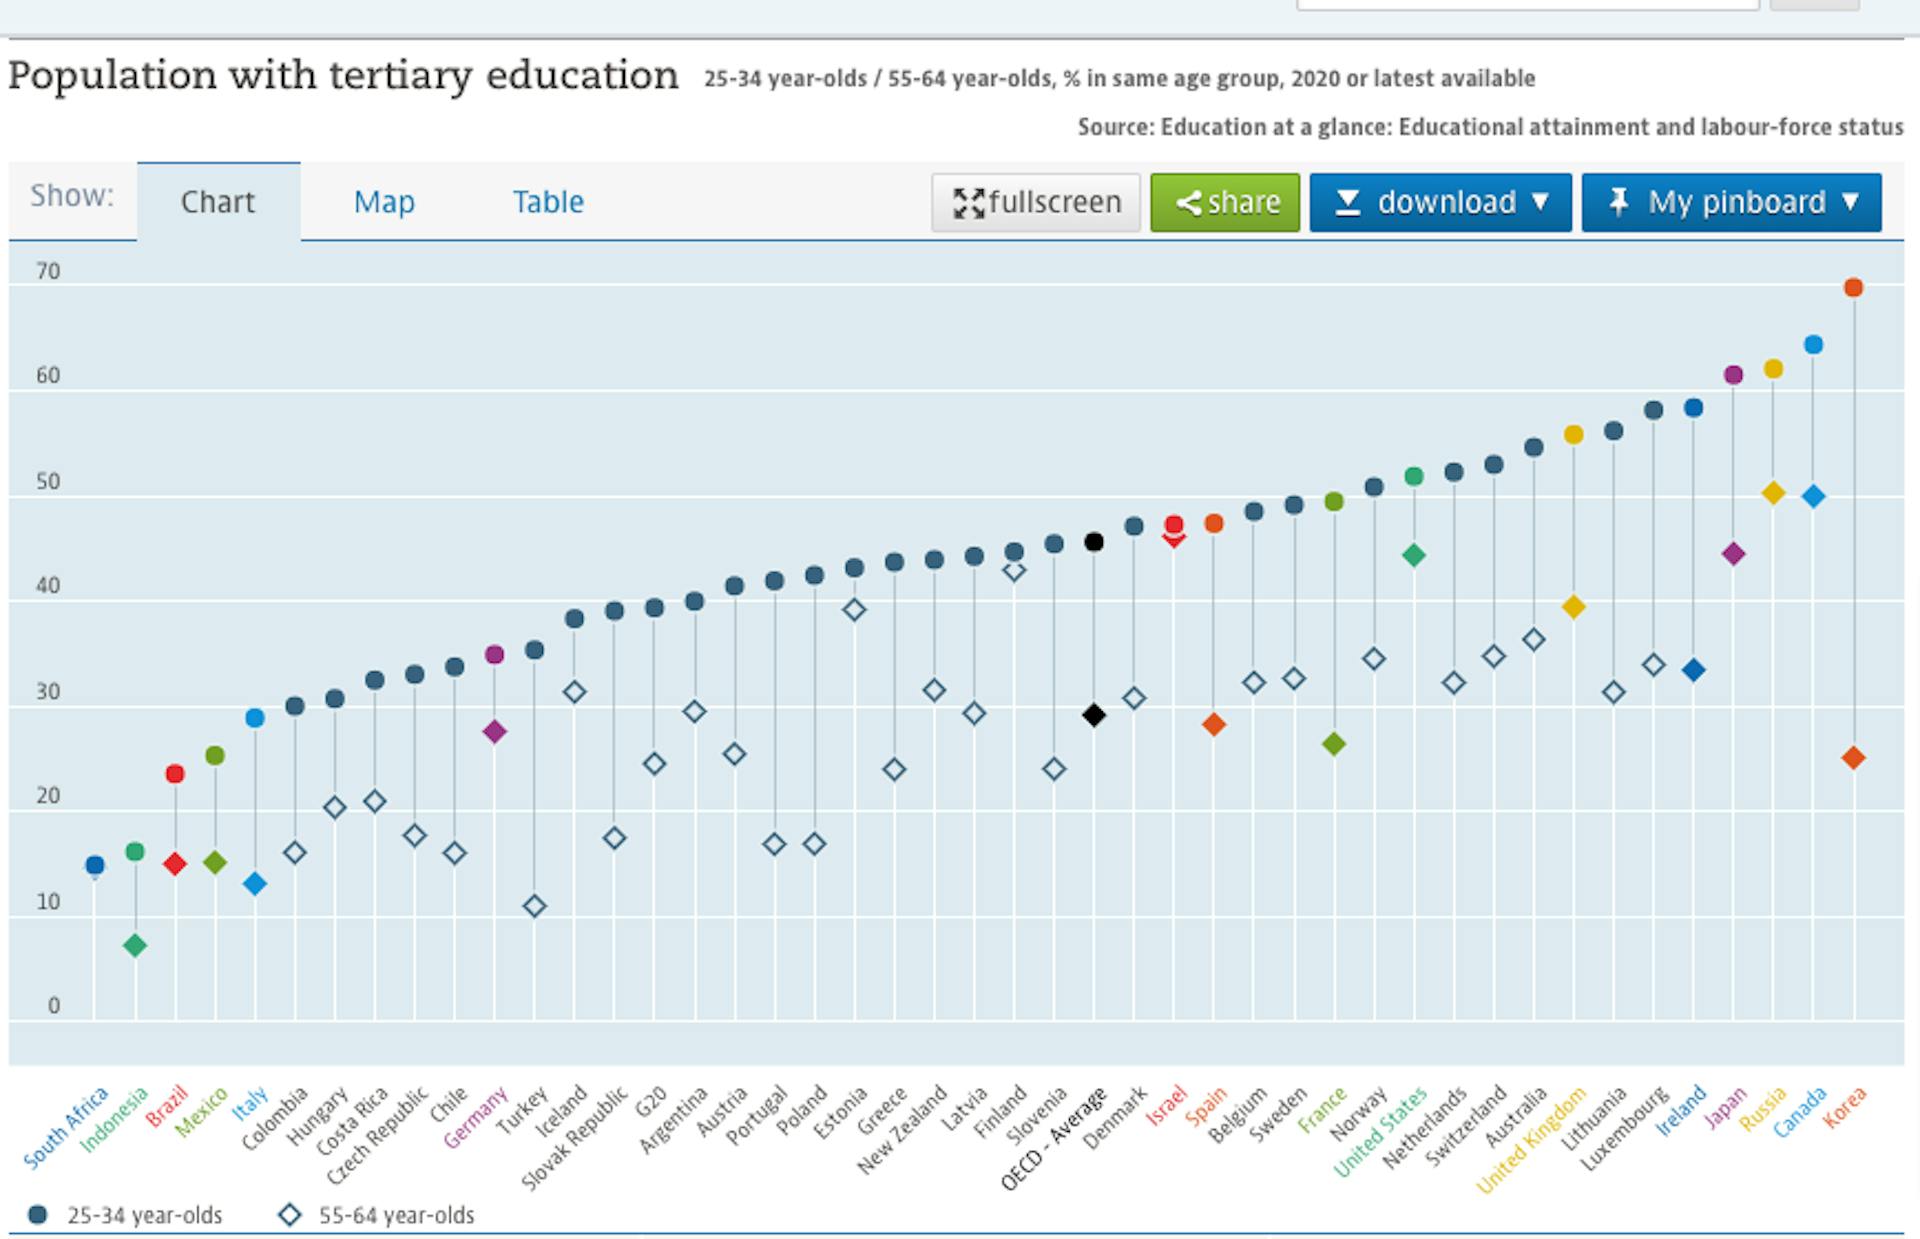 https://data.oecd.org/eduatt/population-with-tertiary-education.htm